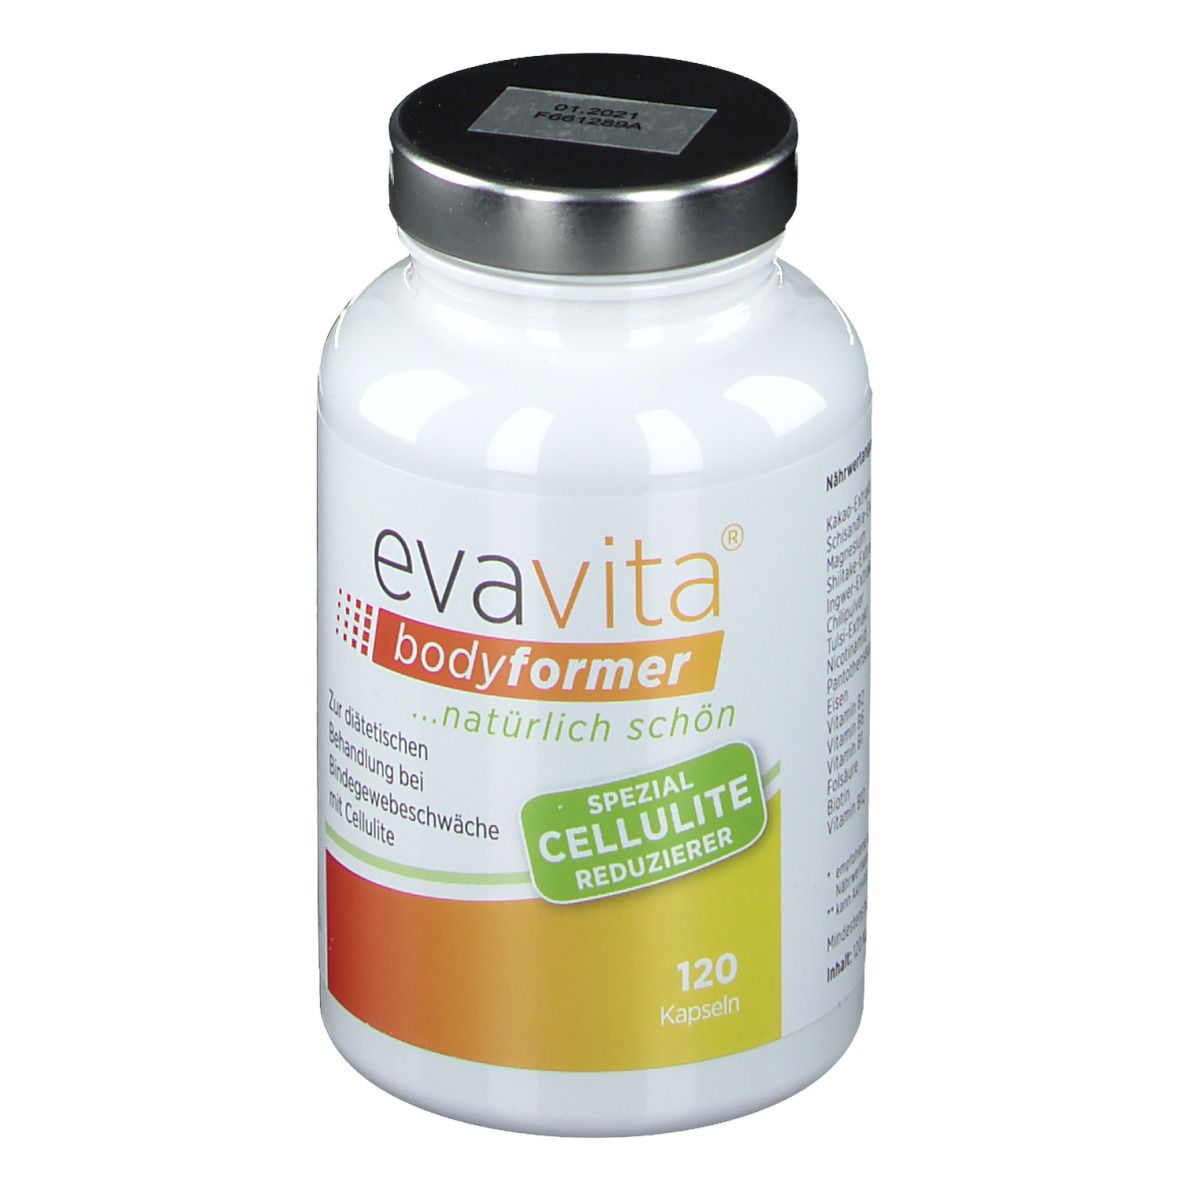 evavita® bodyformer Spezial Cellulite-Reduzierer